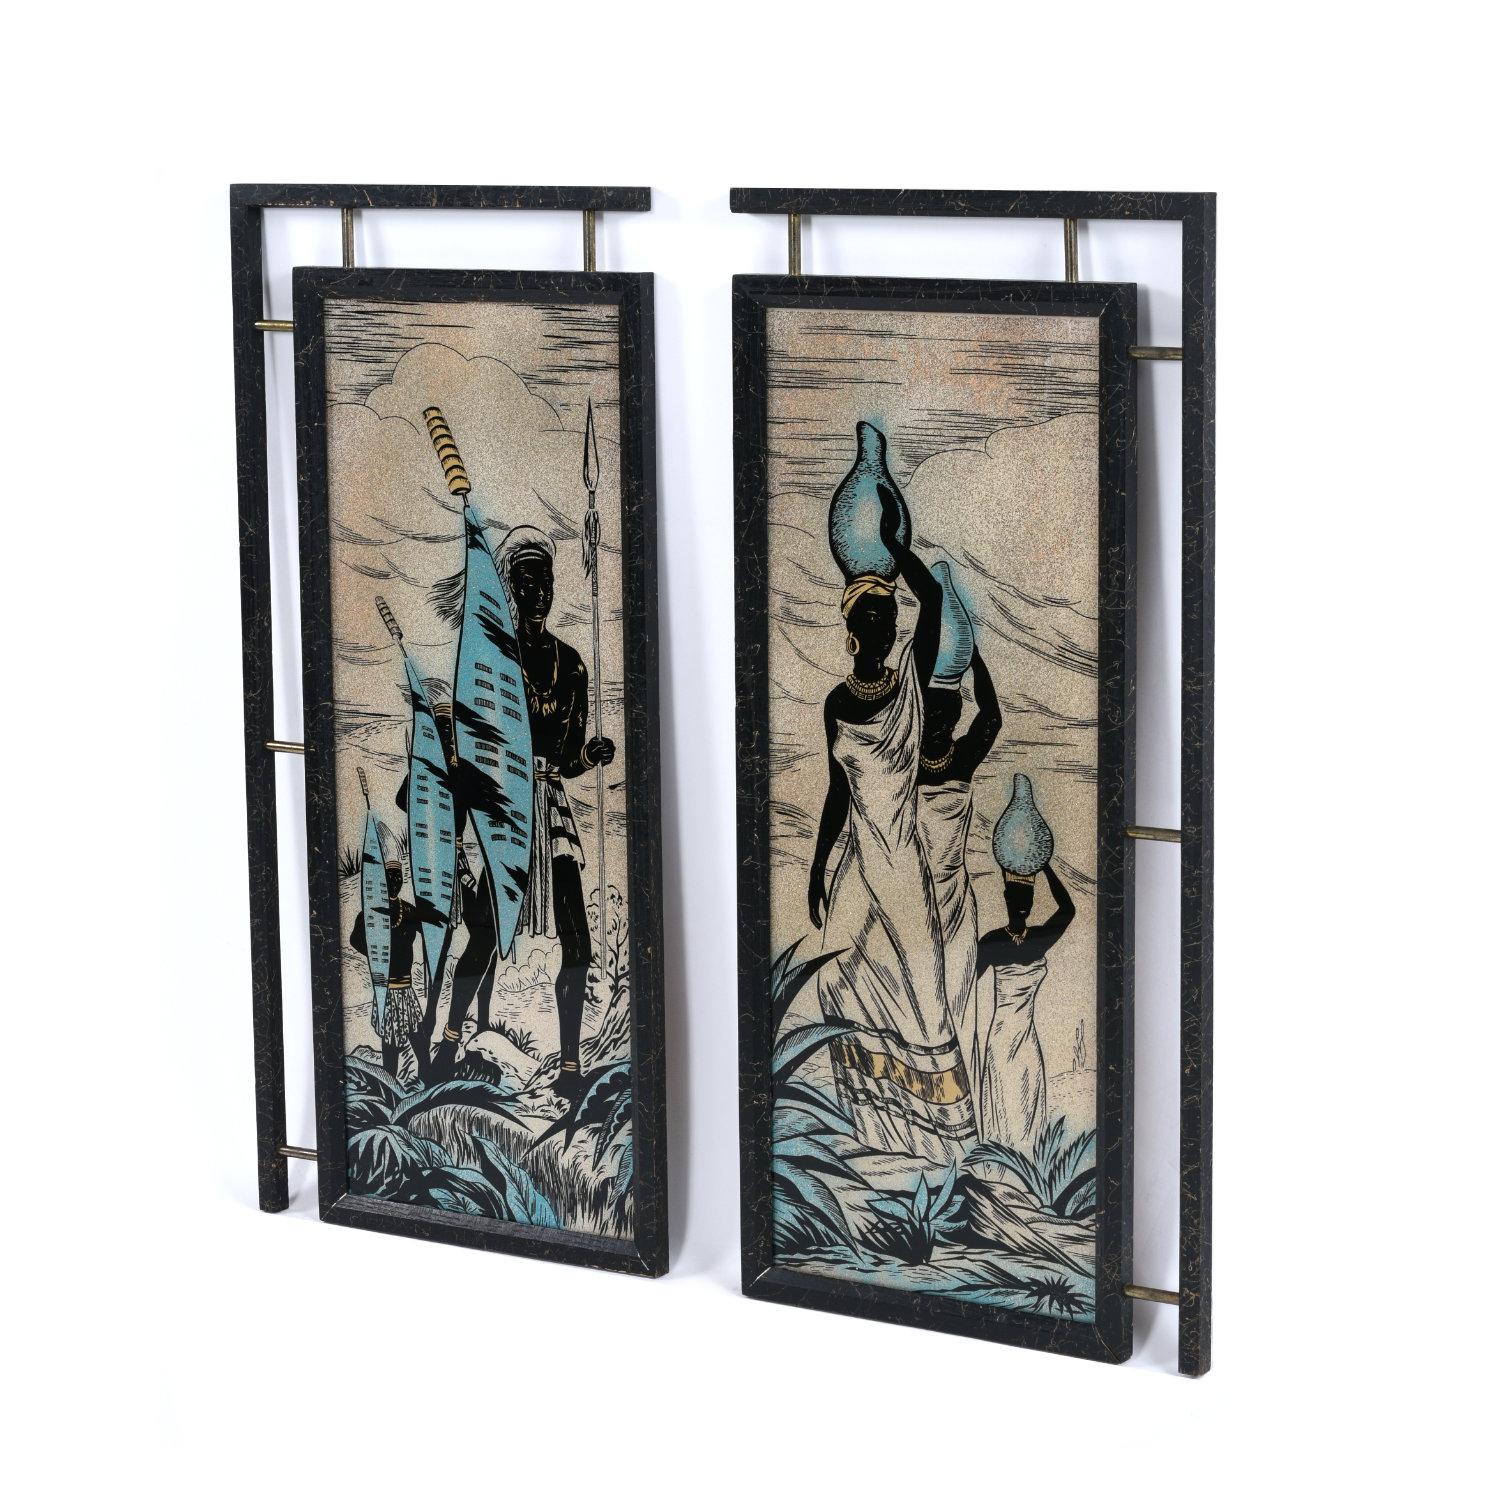 Paire unique de panneaux en verre peints de style moderne du milieu du siècle dernier représentant des personnages africains. Le diptyque présente des guerriers africains sur un côté, et des femmes portant de l'eau sur le second panneau. L'image